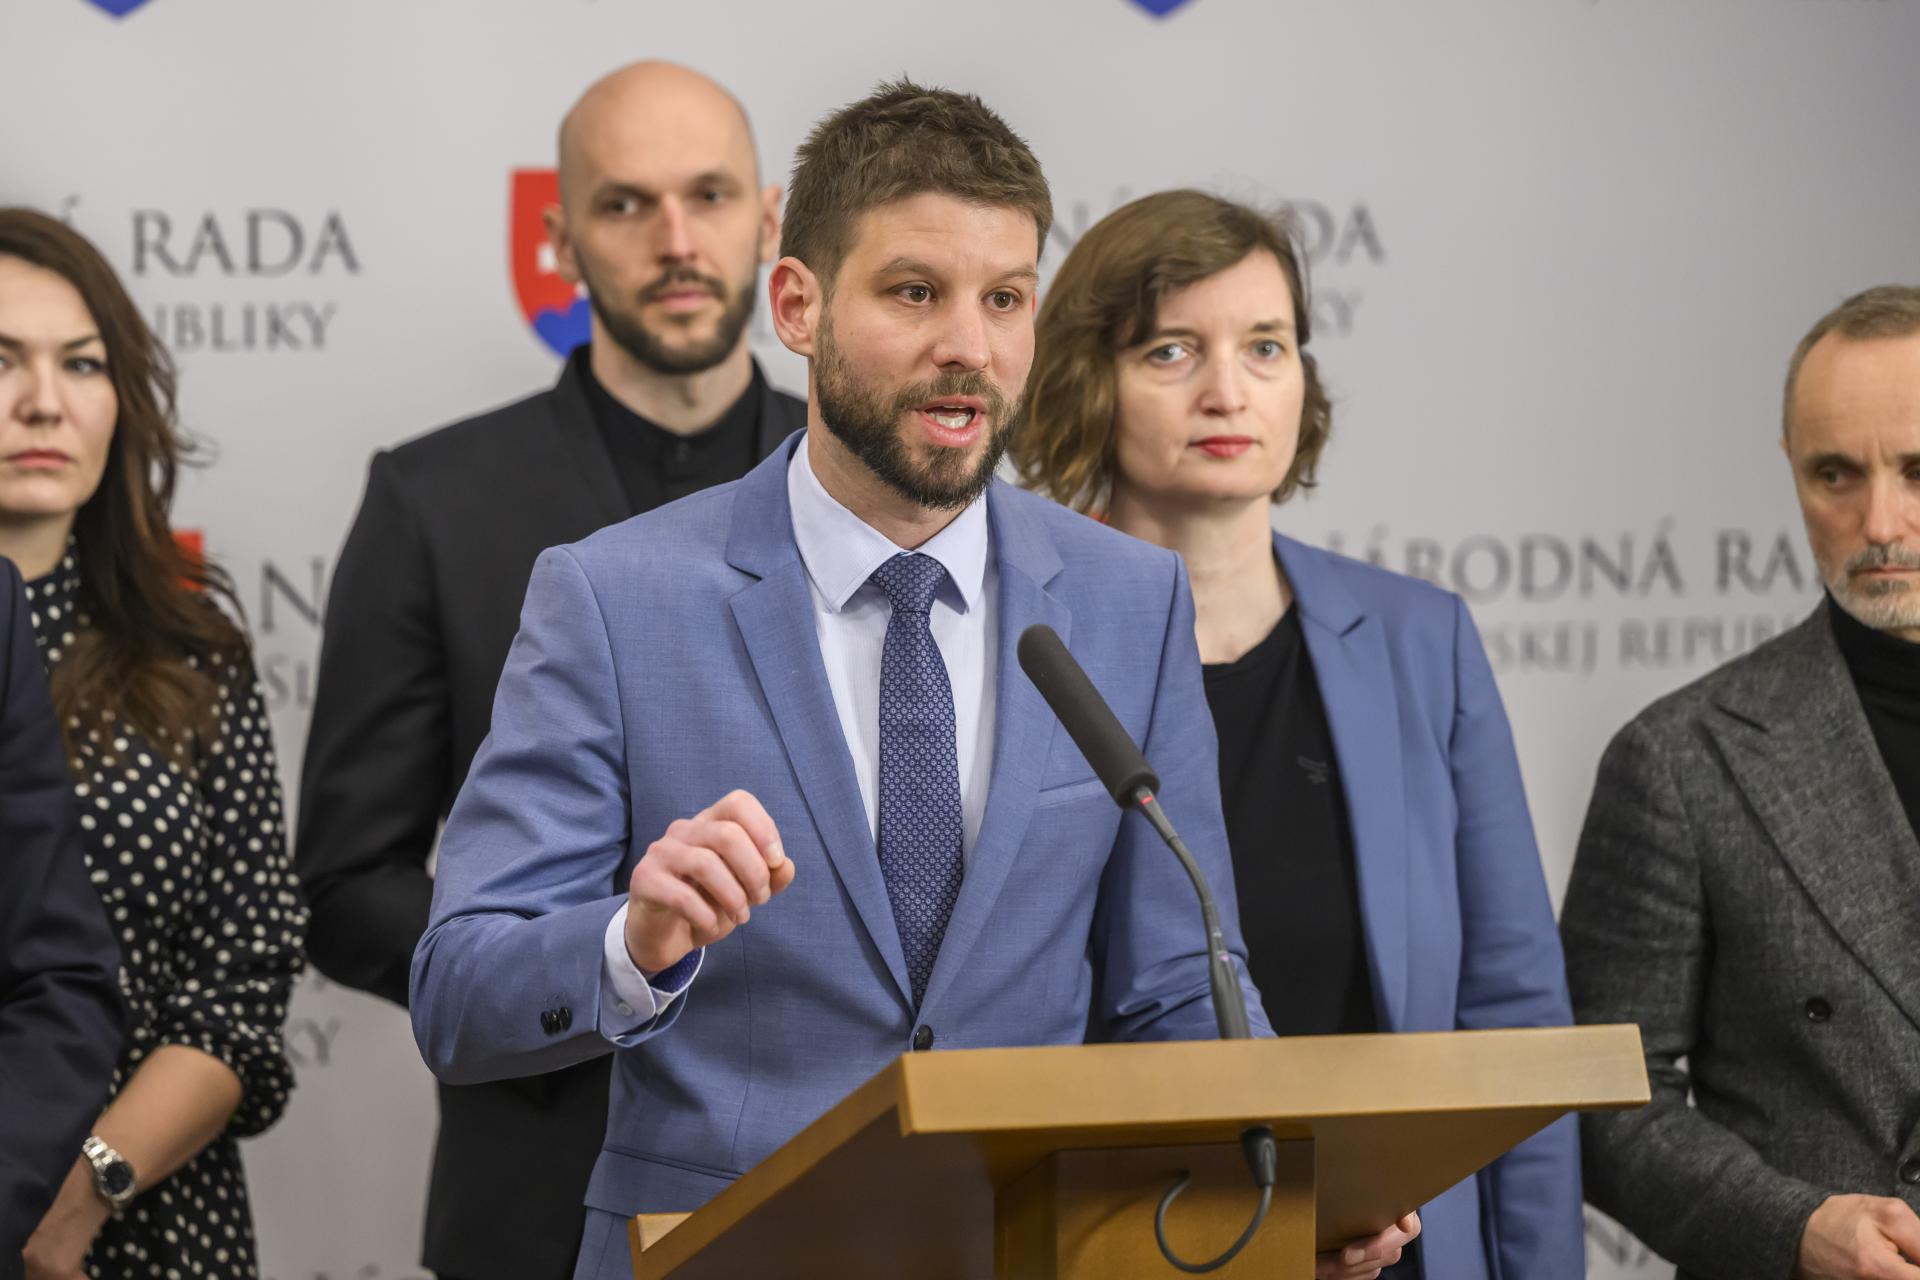 Progresívne Slovensko očakáva dlhodobé riešenia prevencie kriminality v obciach. Nestačí nakúpiť kamery, tvrdí